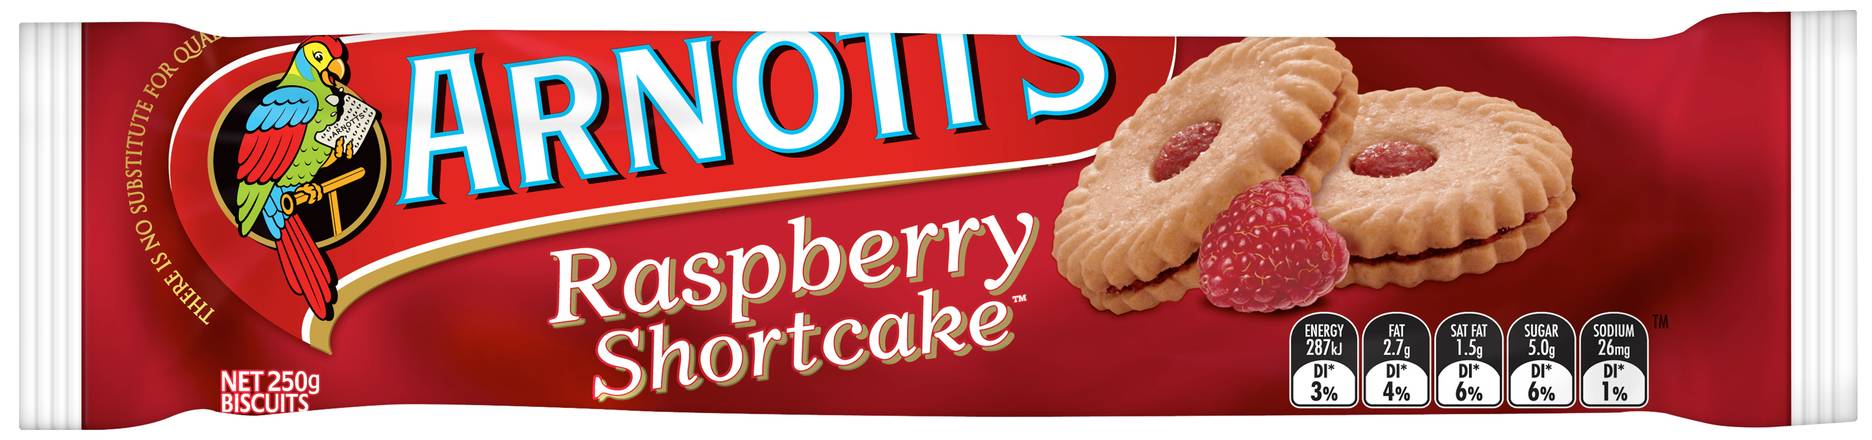 Arnott's Raspberry Shortcake Biscuits 250g